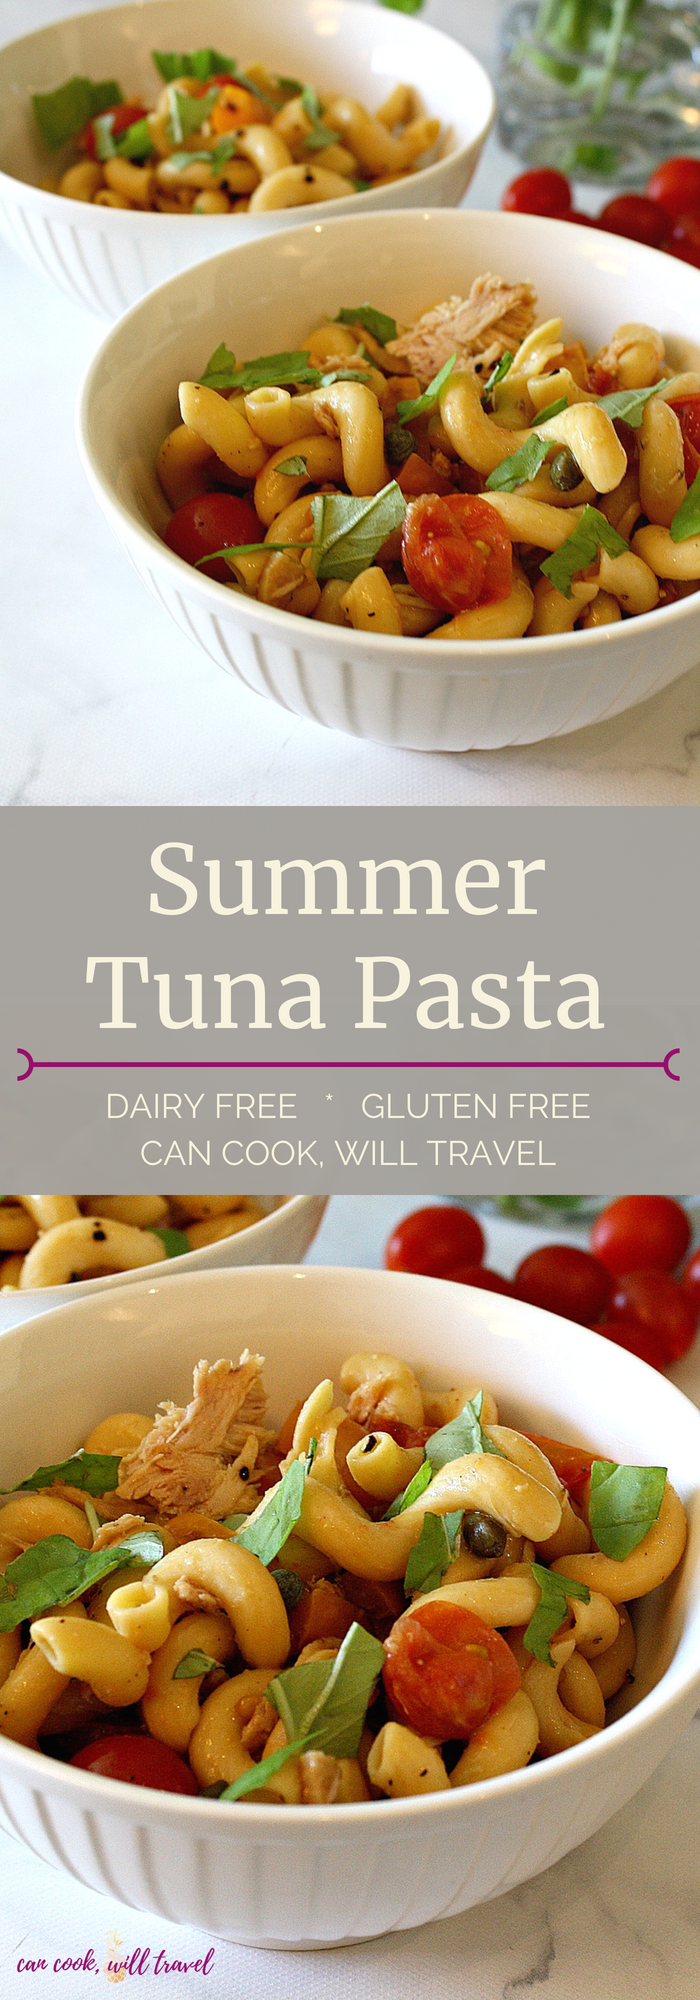 Summer Tuna Pasta_Collage1